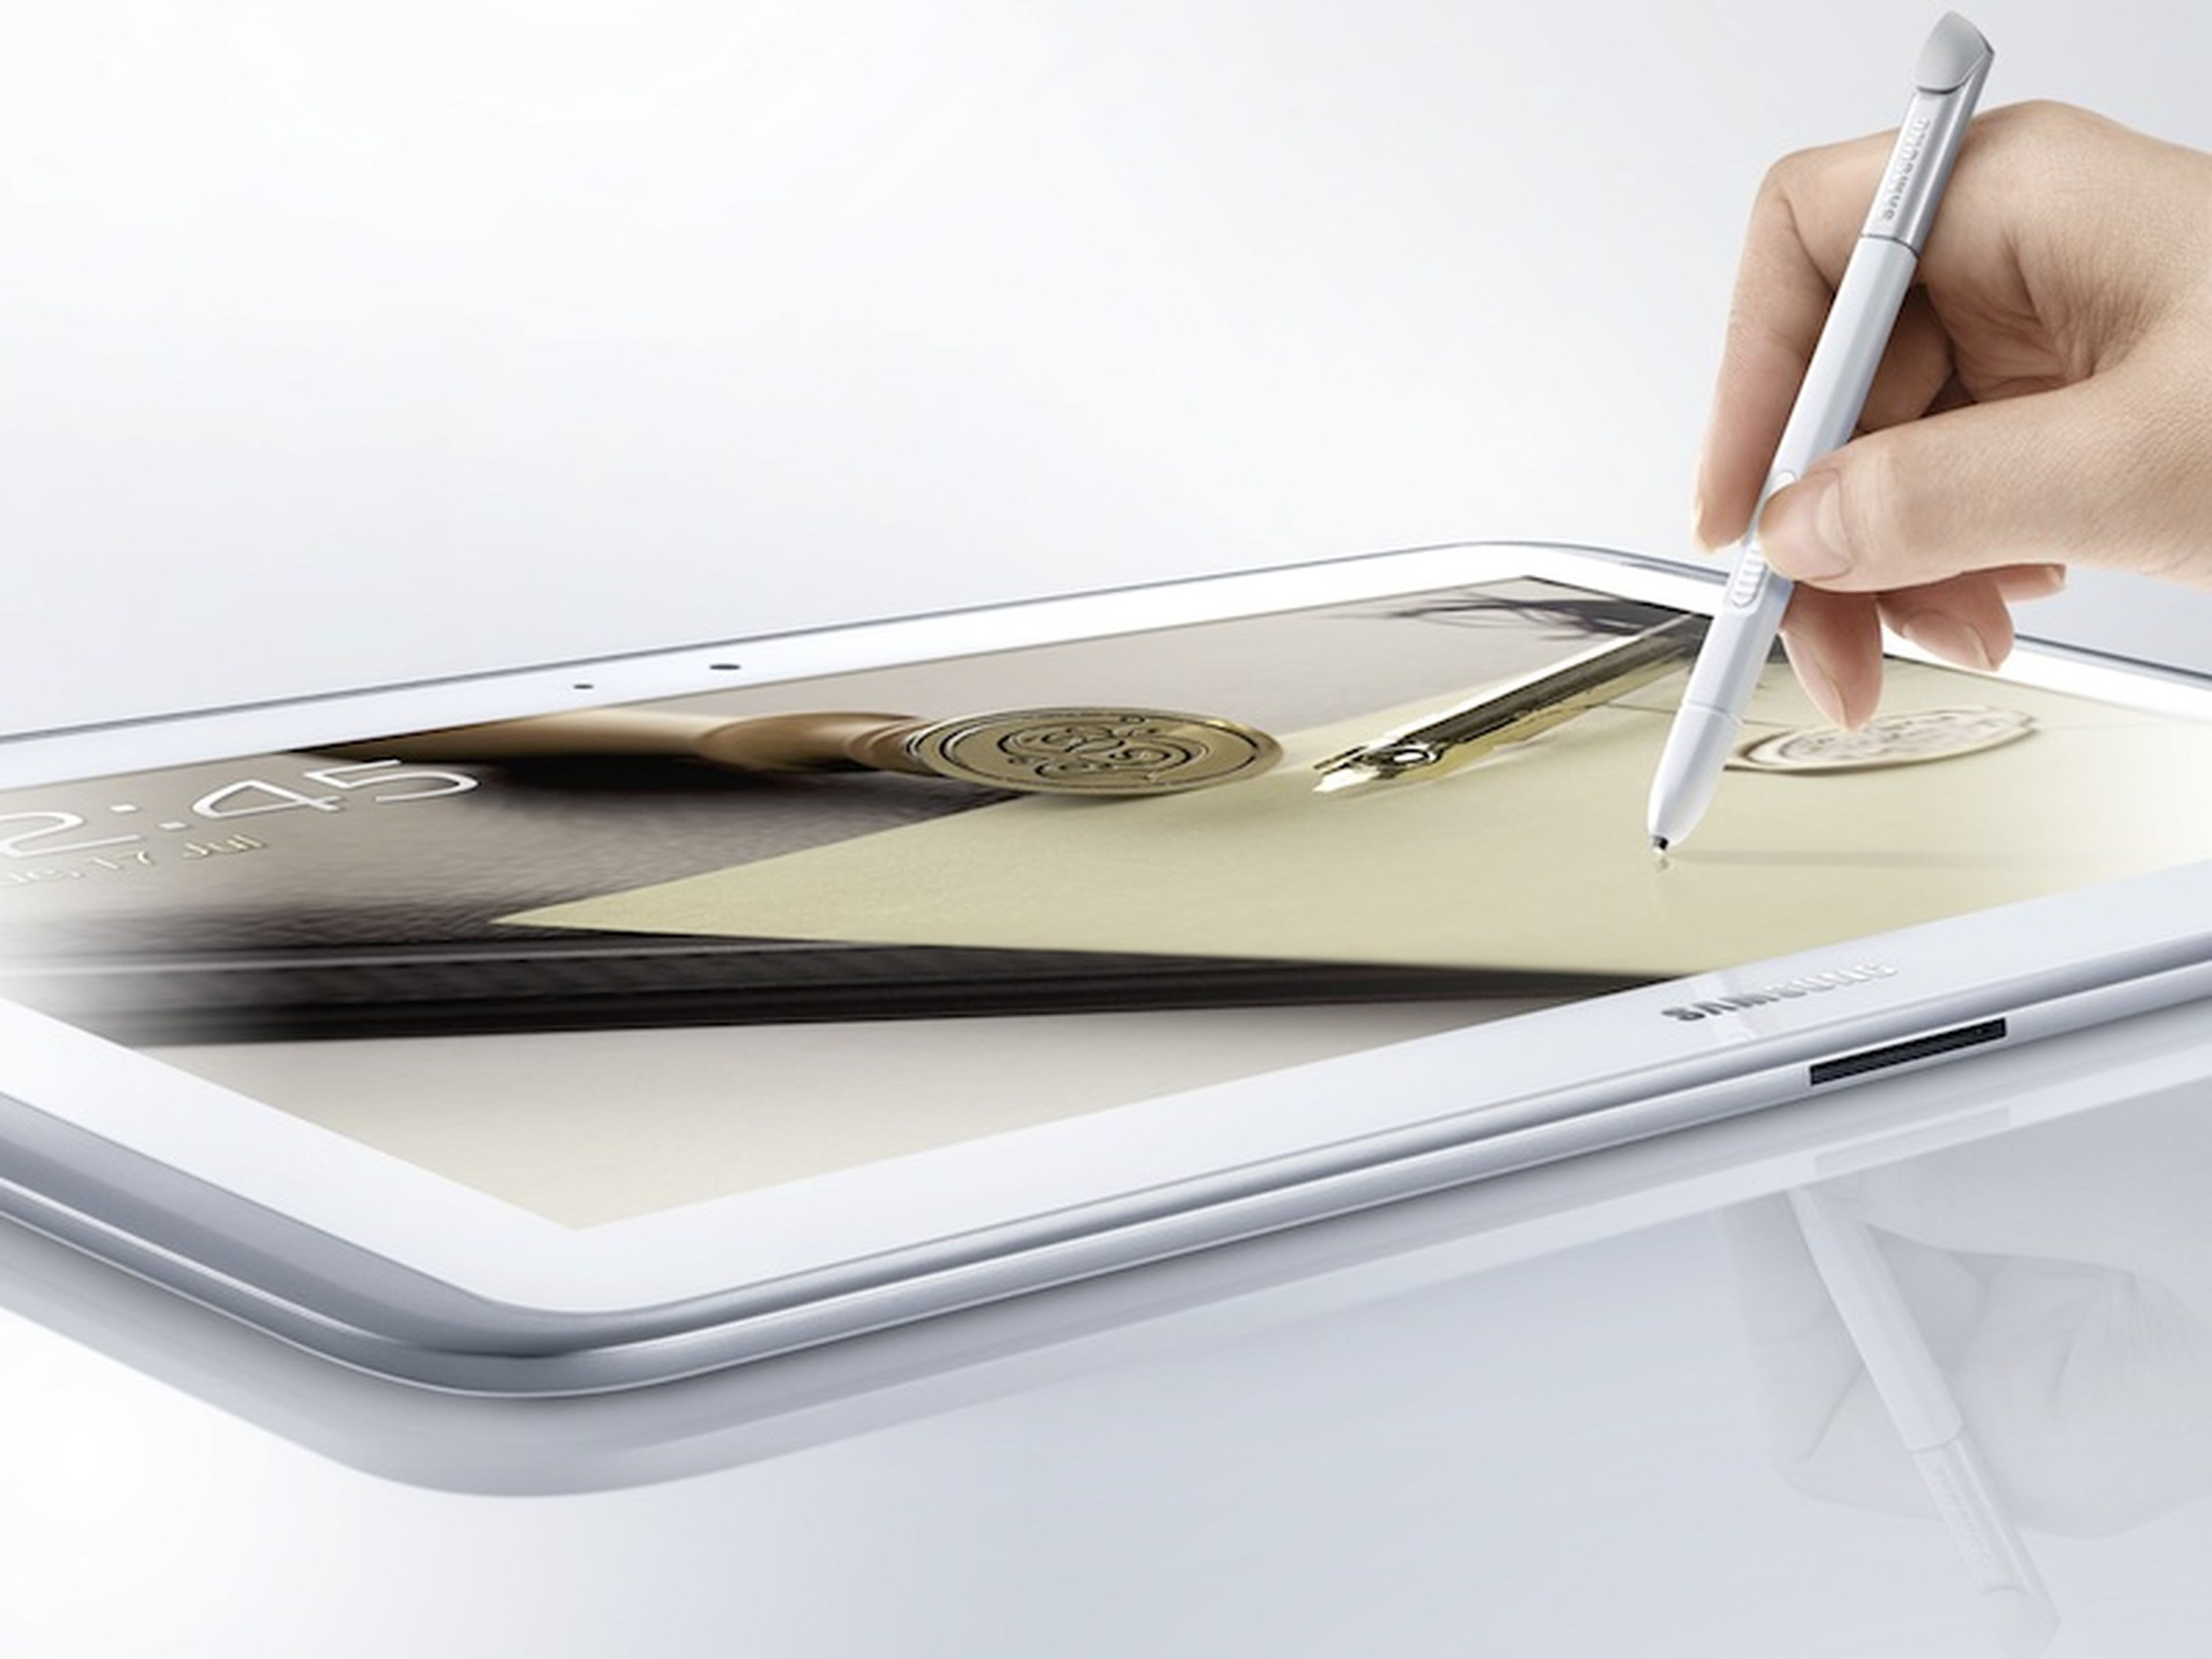 El nuevo Galaxy Note 8 prentende plantar cara la iPad Mini de Apple